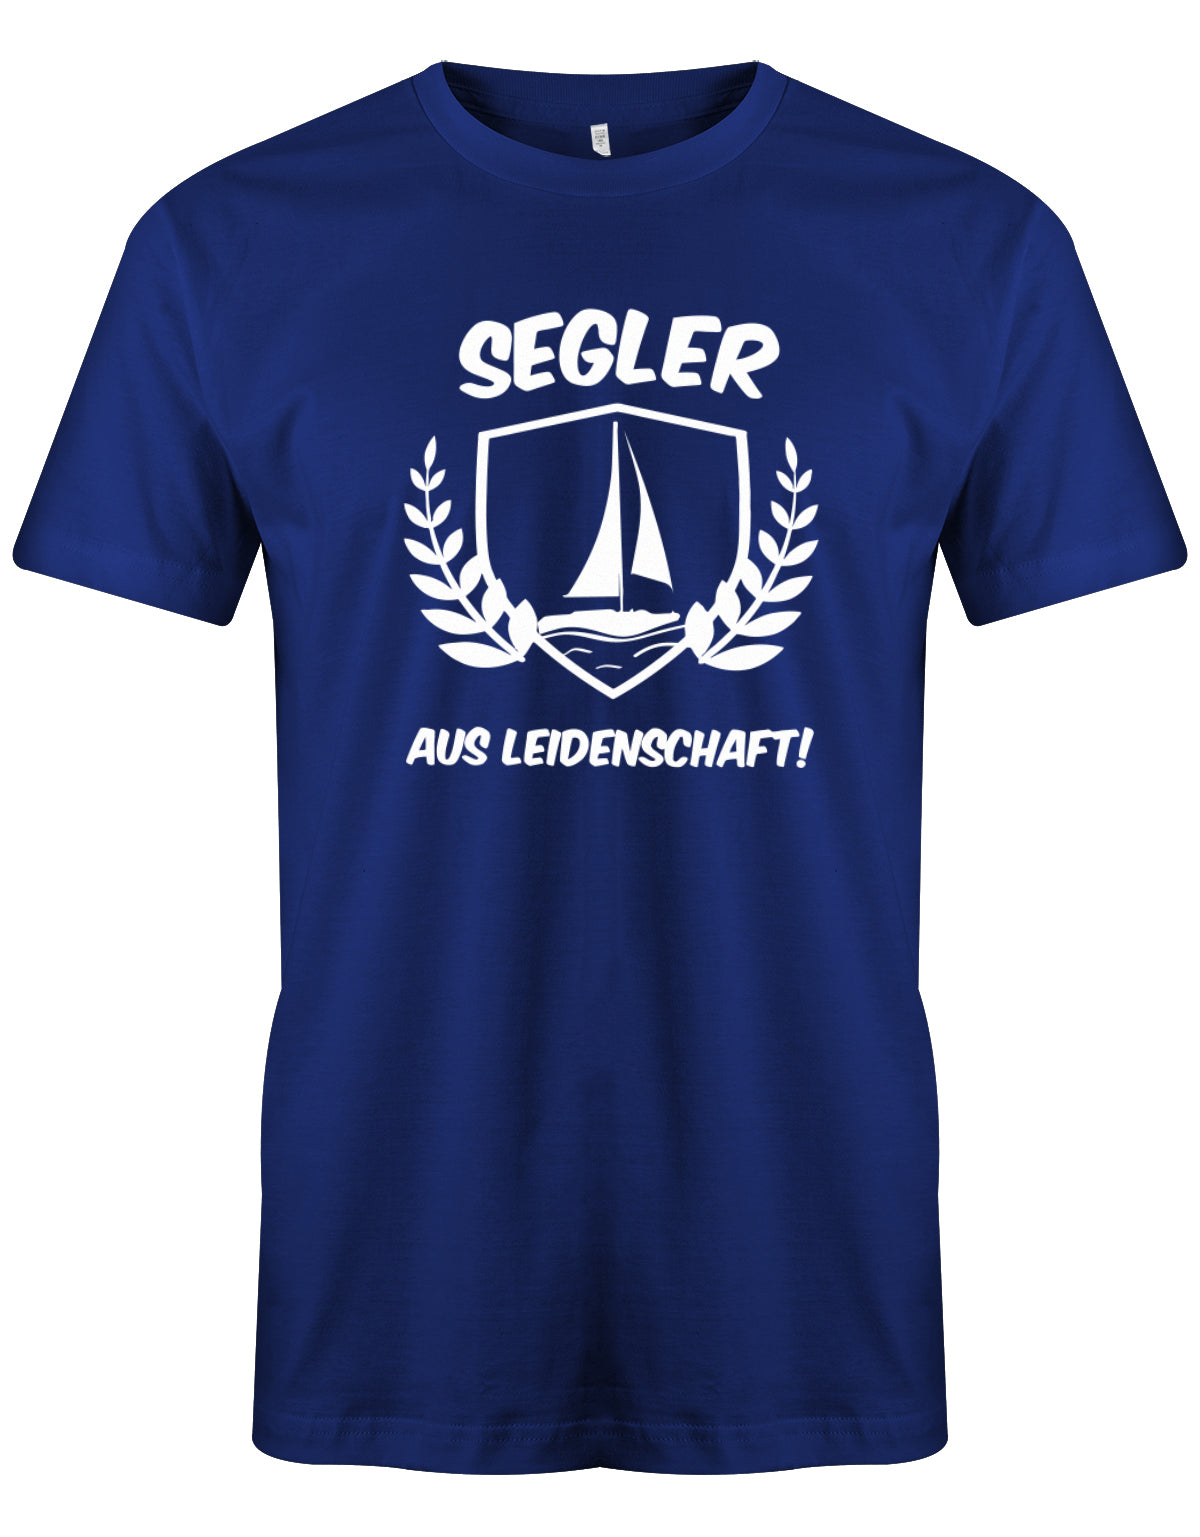 Das Segler t-shirt bedruckt mit "Segler aus Leidenschaft mit Segelboot" Royalblau